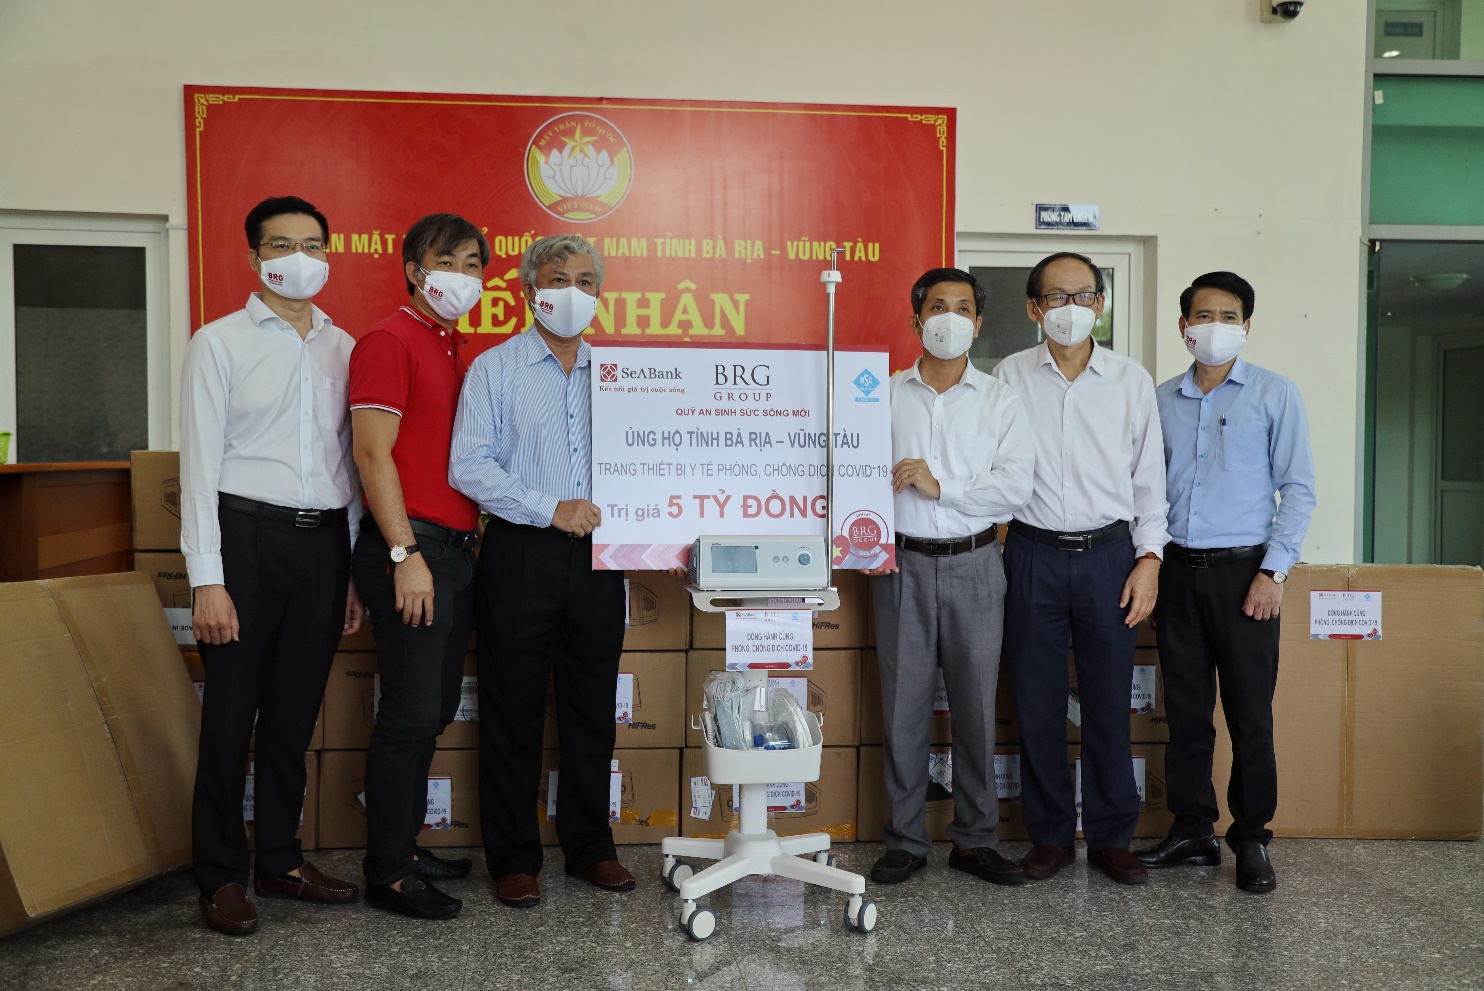 OSC Việt Nam - đại diện Quỹ An Sinh Sức Sống Mới của BRG và SeABank: Chung tay đẩy lùi dịch bệnh